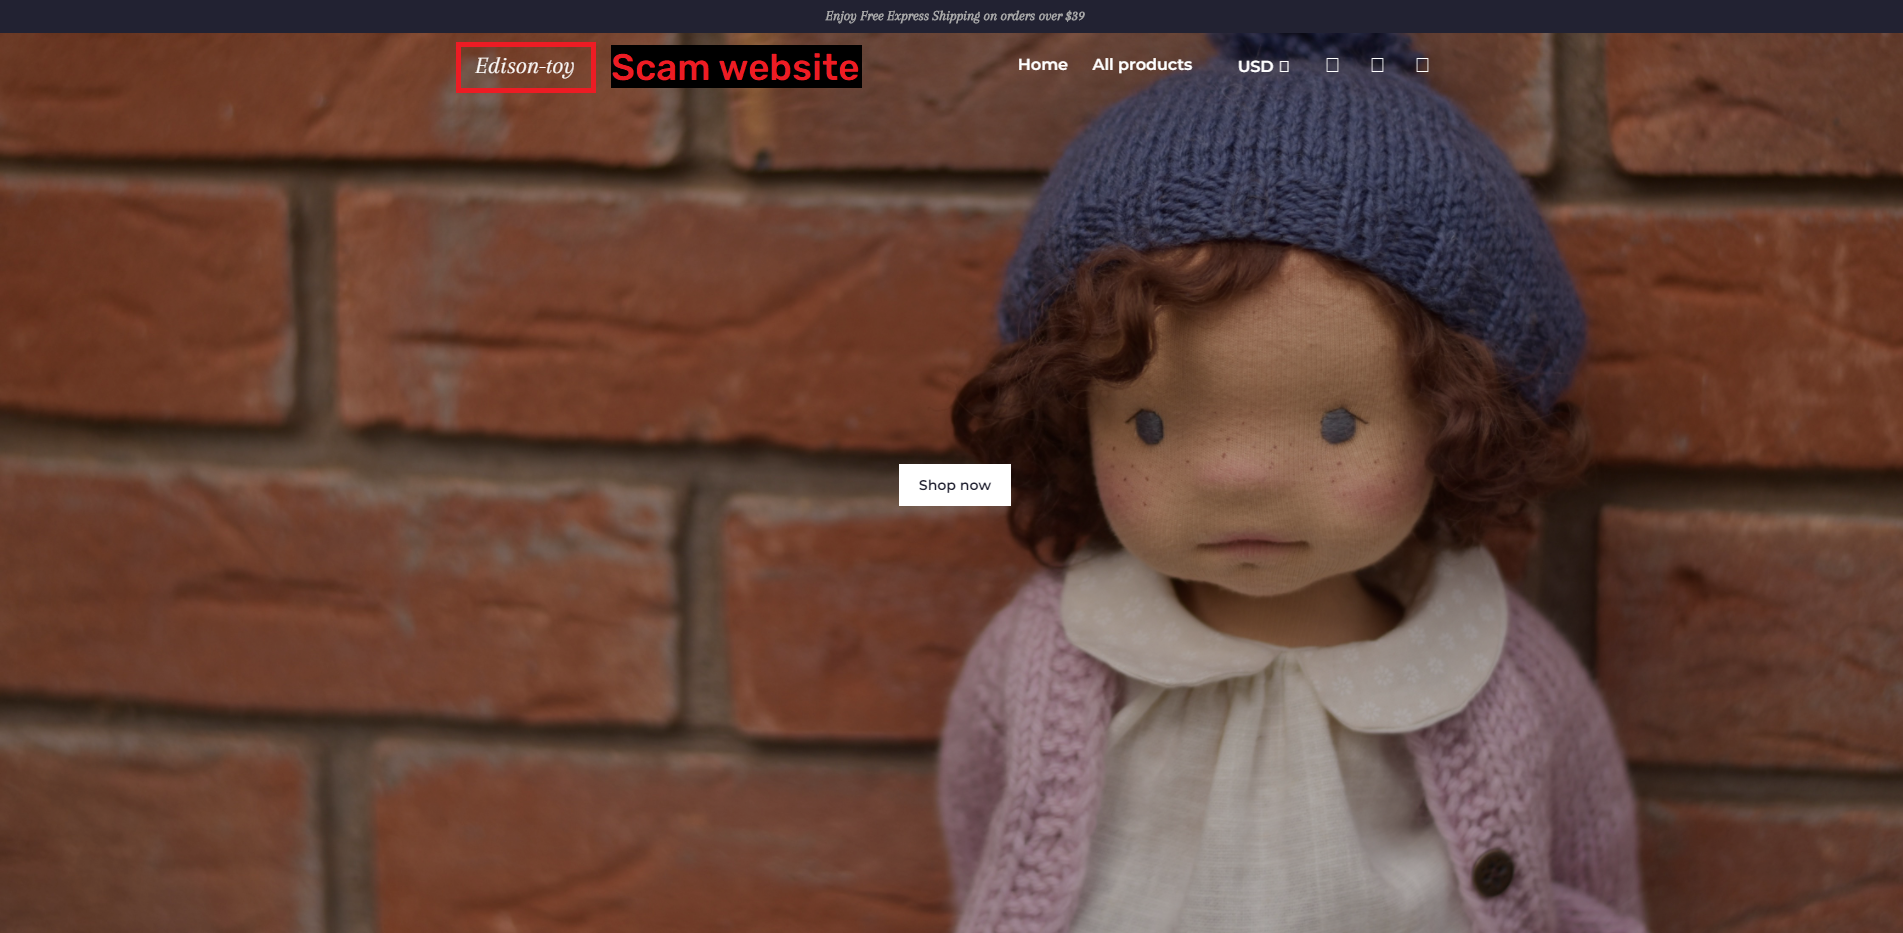 waldorf dolls scam copycat websitescam